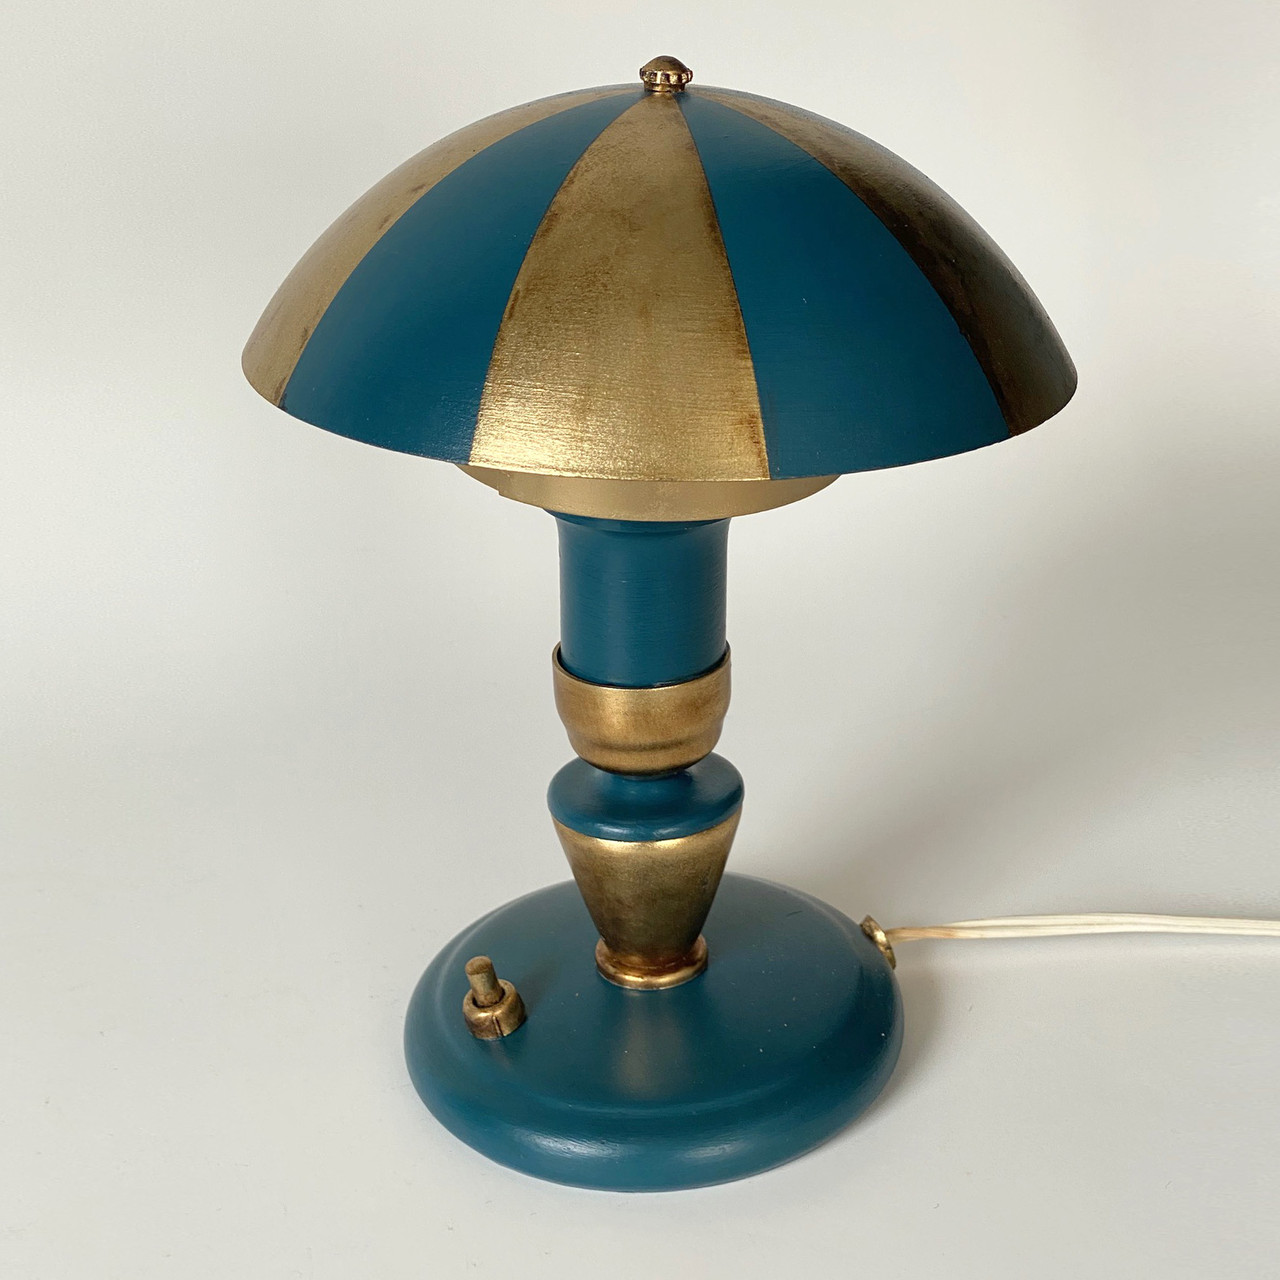 Лампа настольная, ночник Волшебный зонтик, винтаж. СССР, фото 1